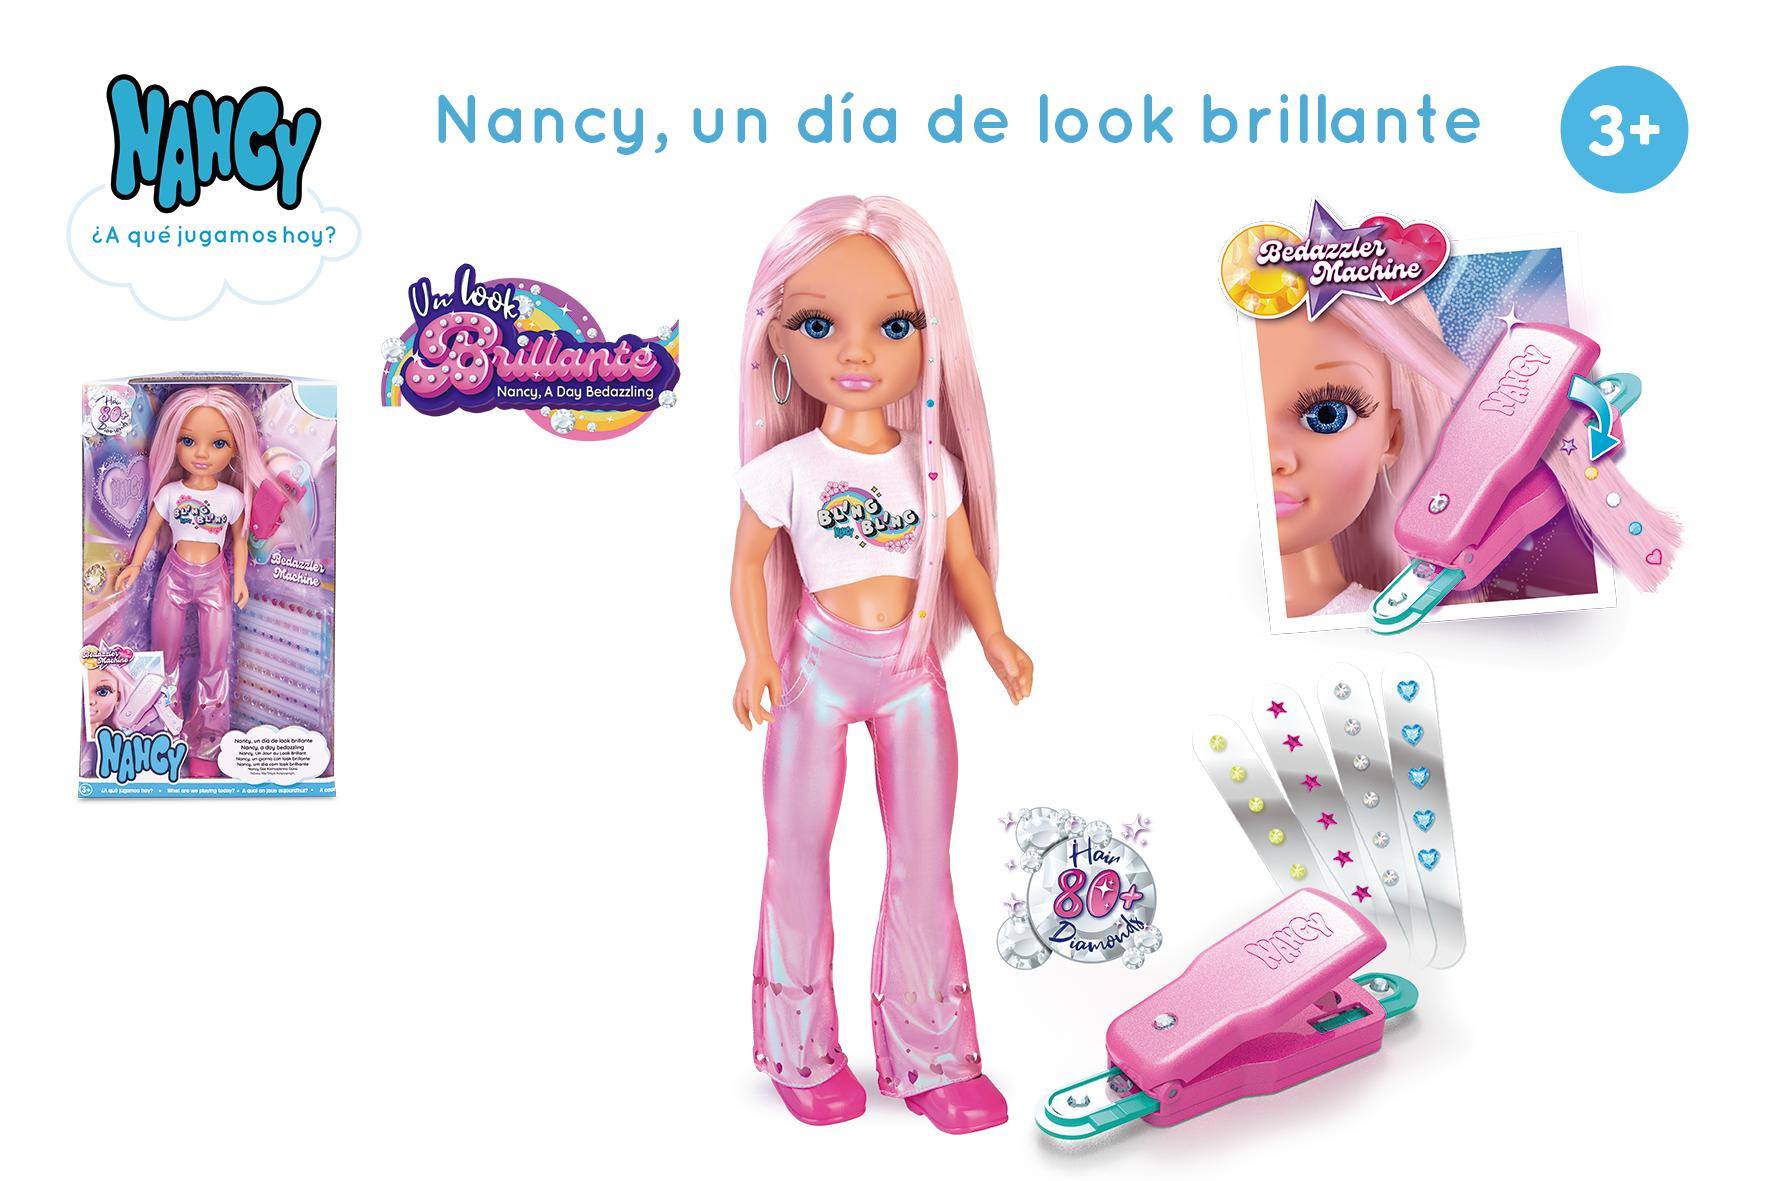 NANCY UN DIA DE LOOK BRILLANTE NAC45000 N10923